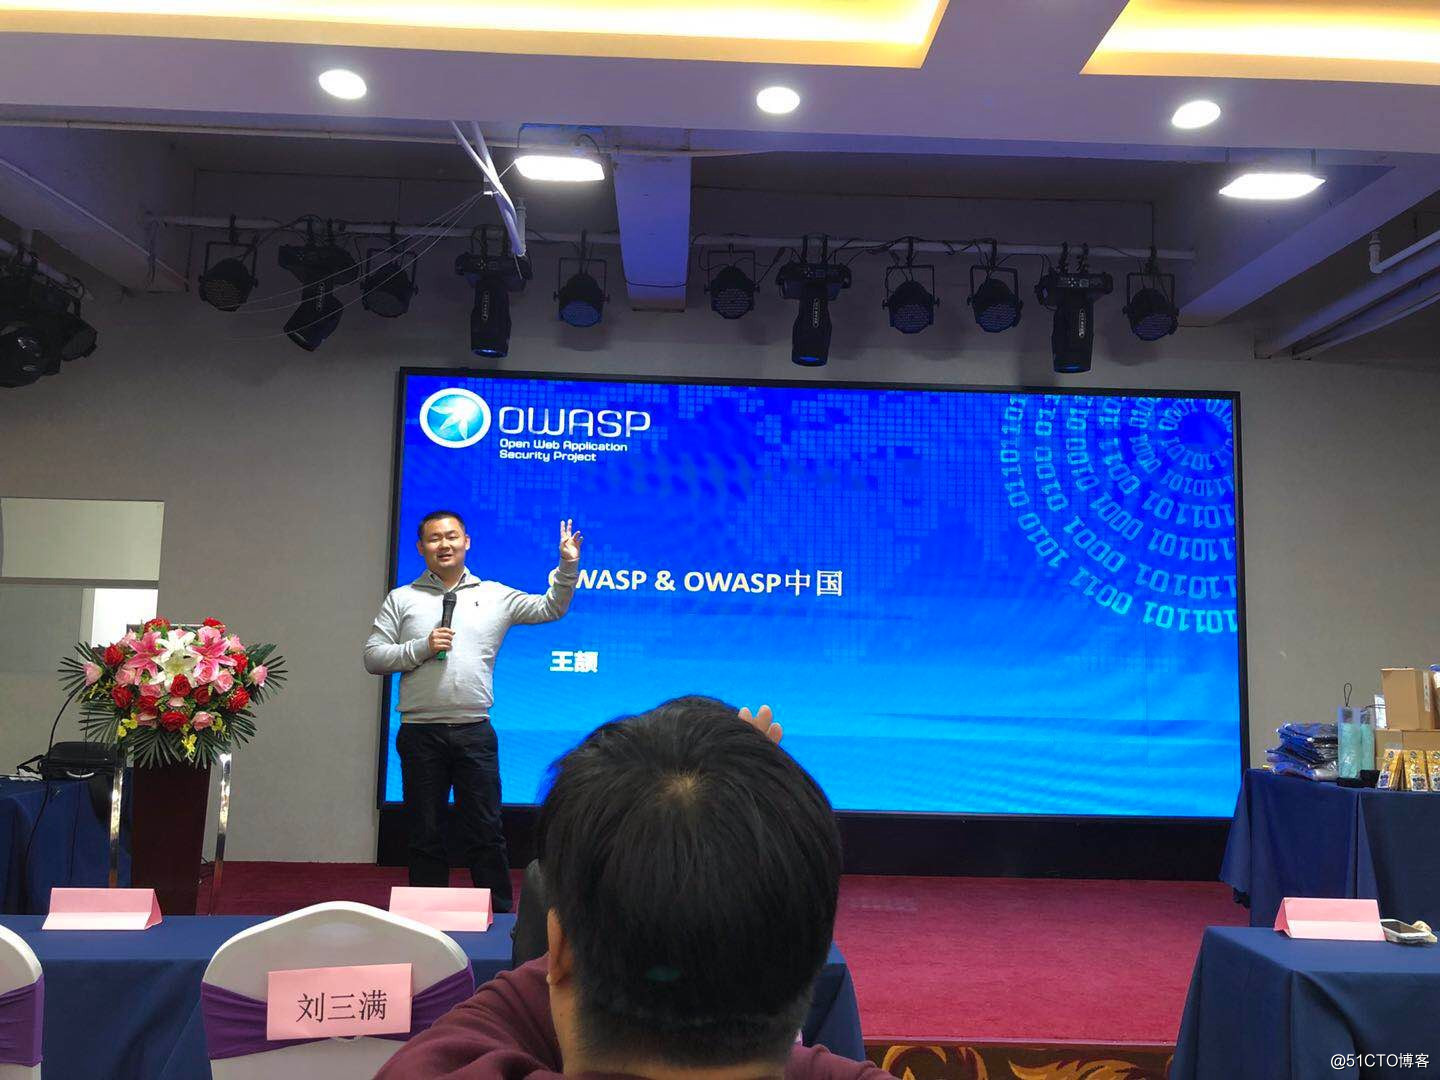 远禾科技出席OWASP中国山西技术沙龙 共话应用安全与企业安全发展趋势